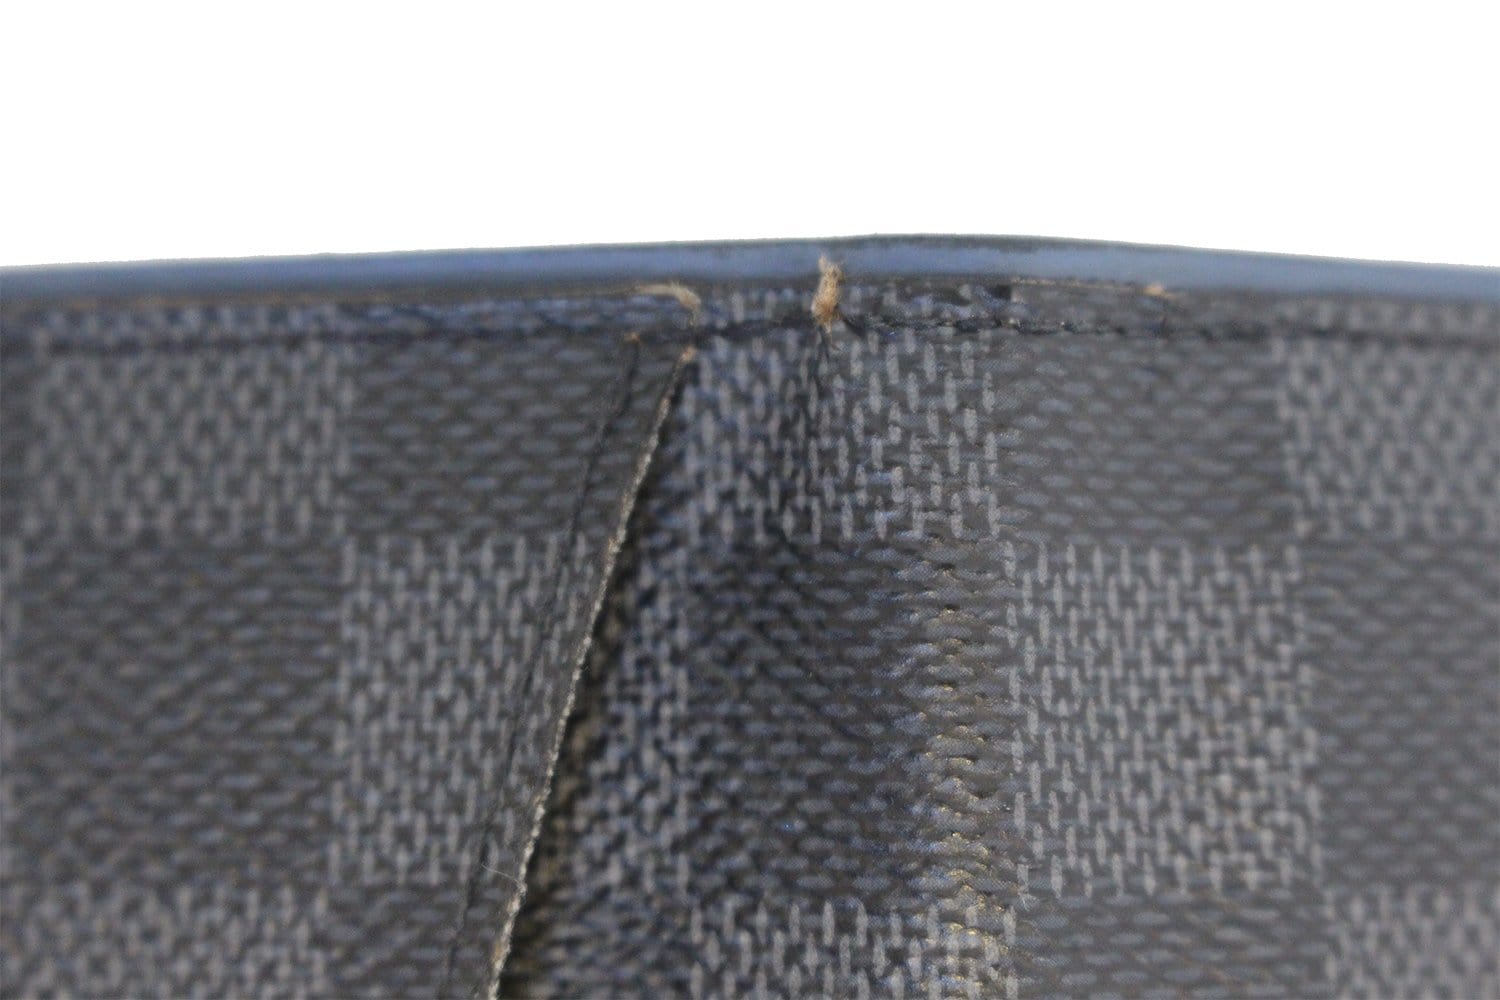 Louis Vuitton Damier Graphite Card Case Damier Graphite Pocket Organizer  N63143